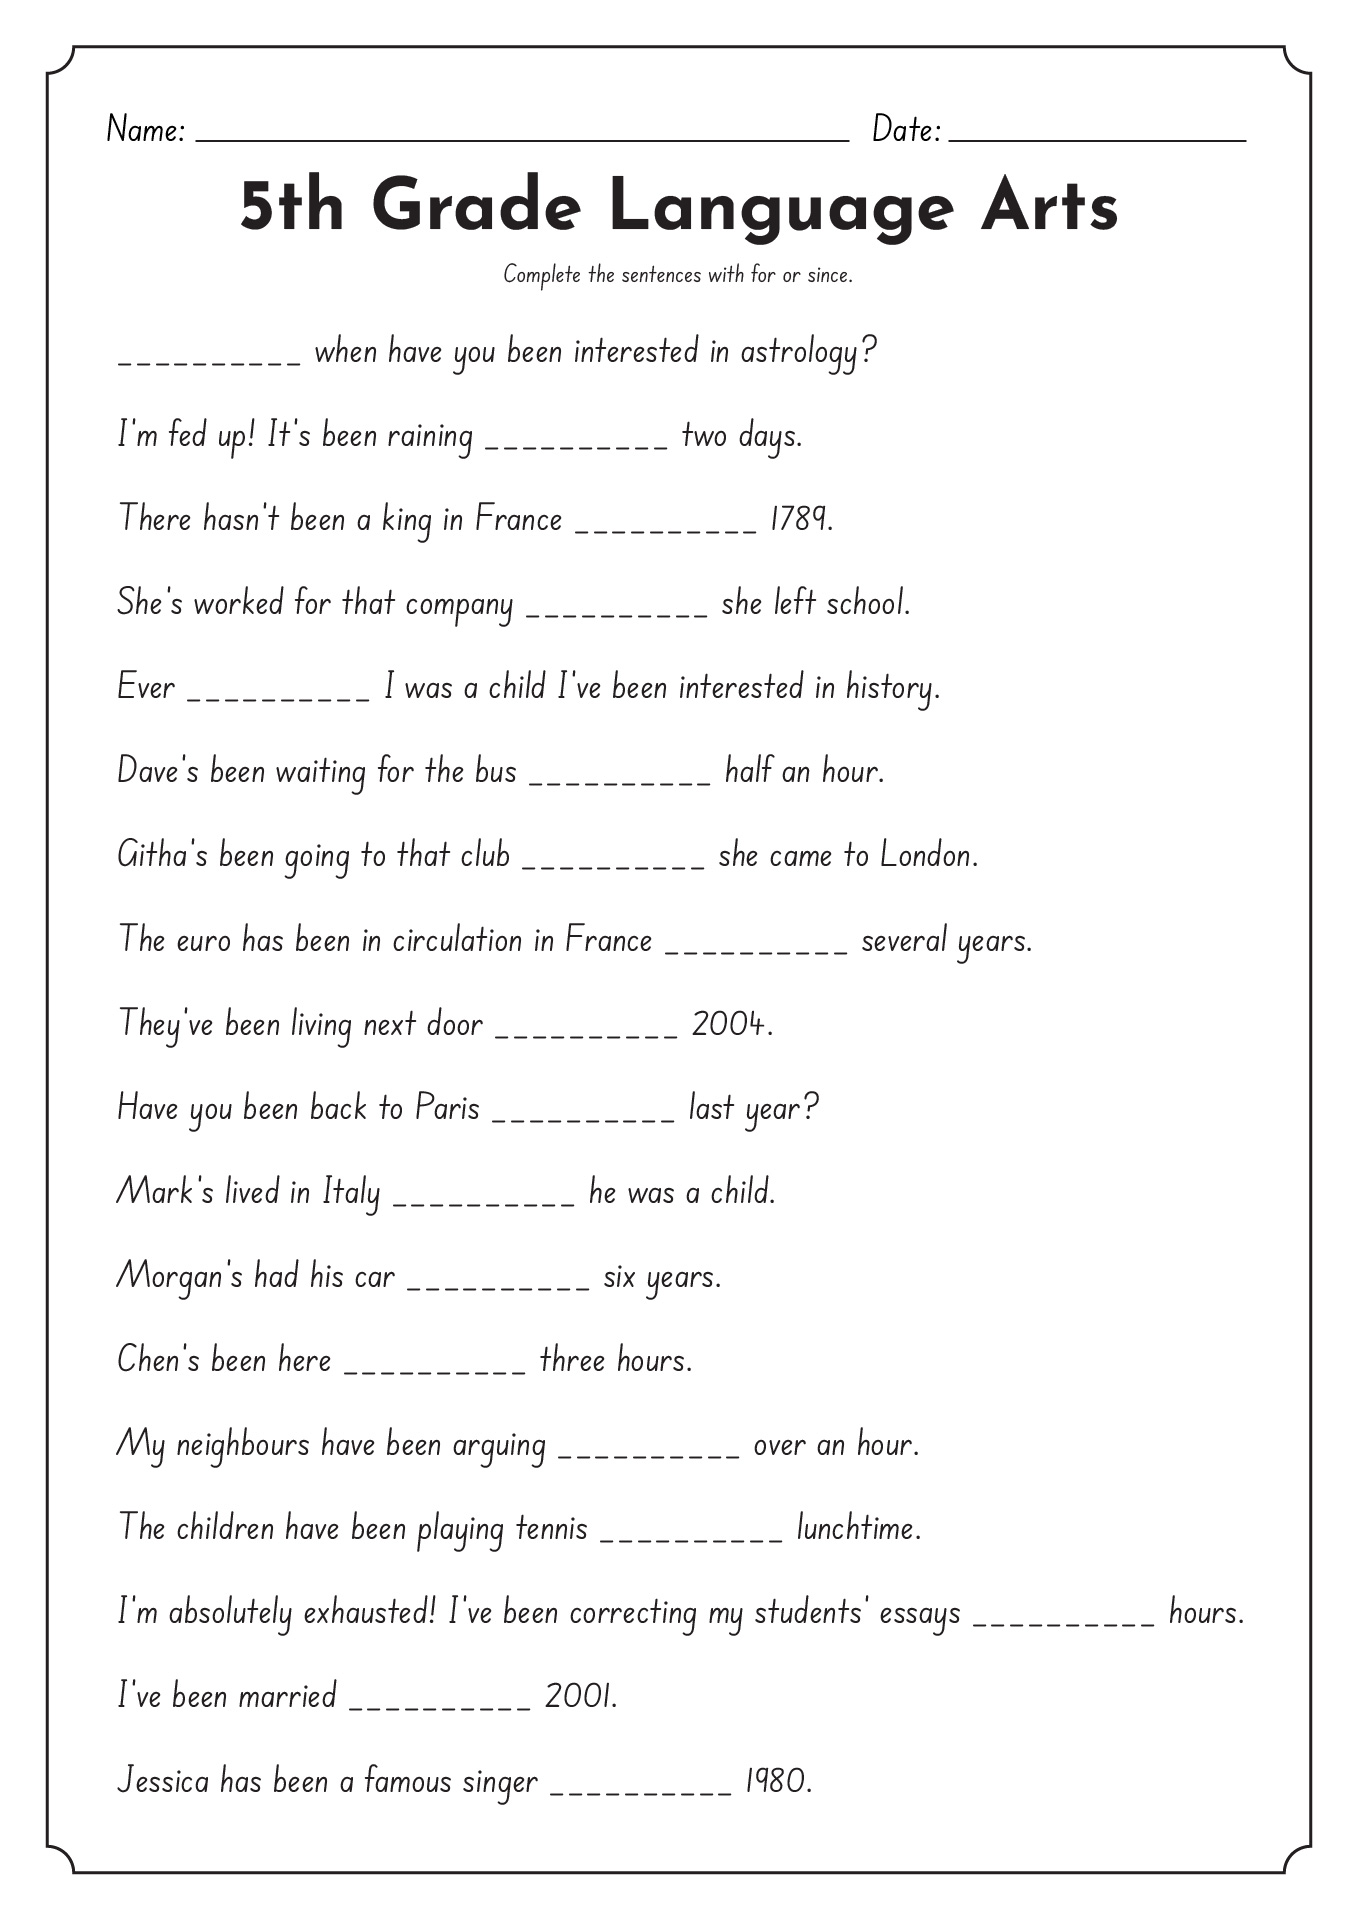 5th Grade Language Arts Worksheets Image